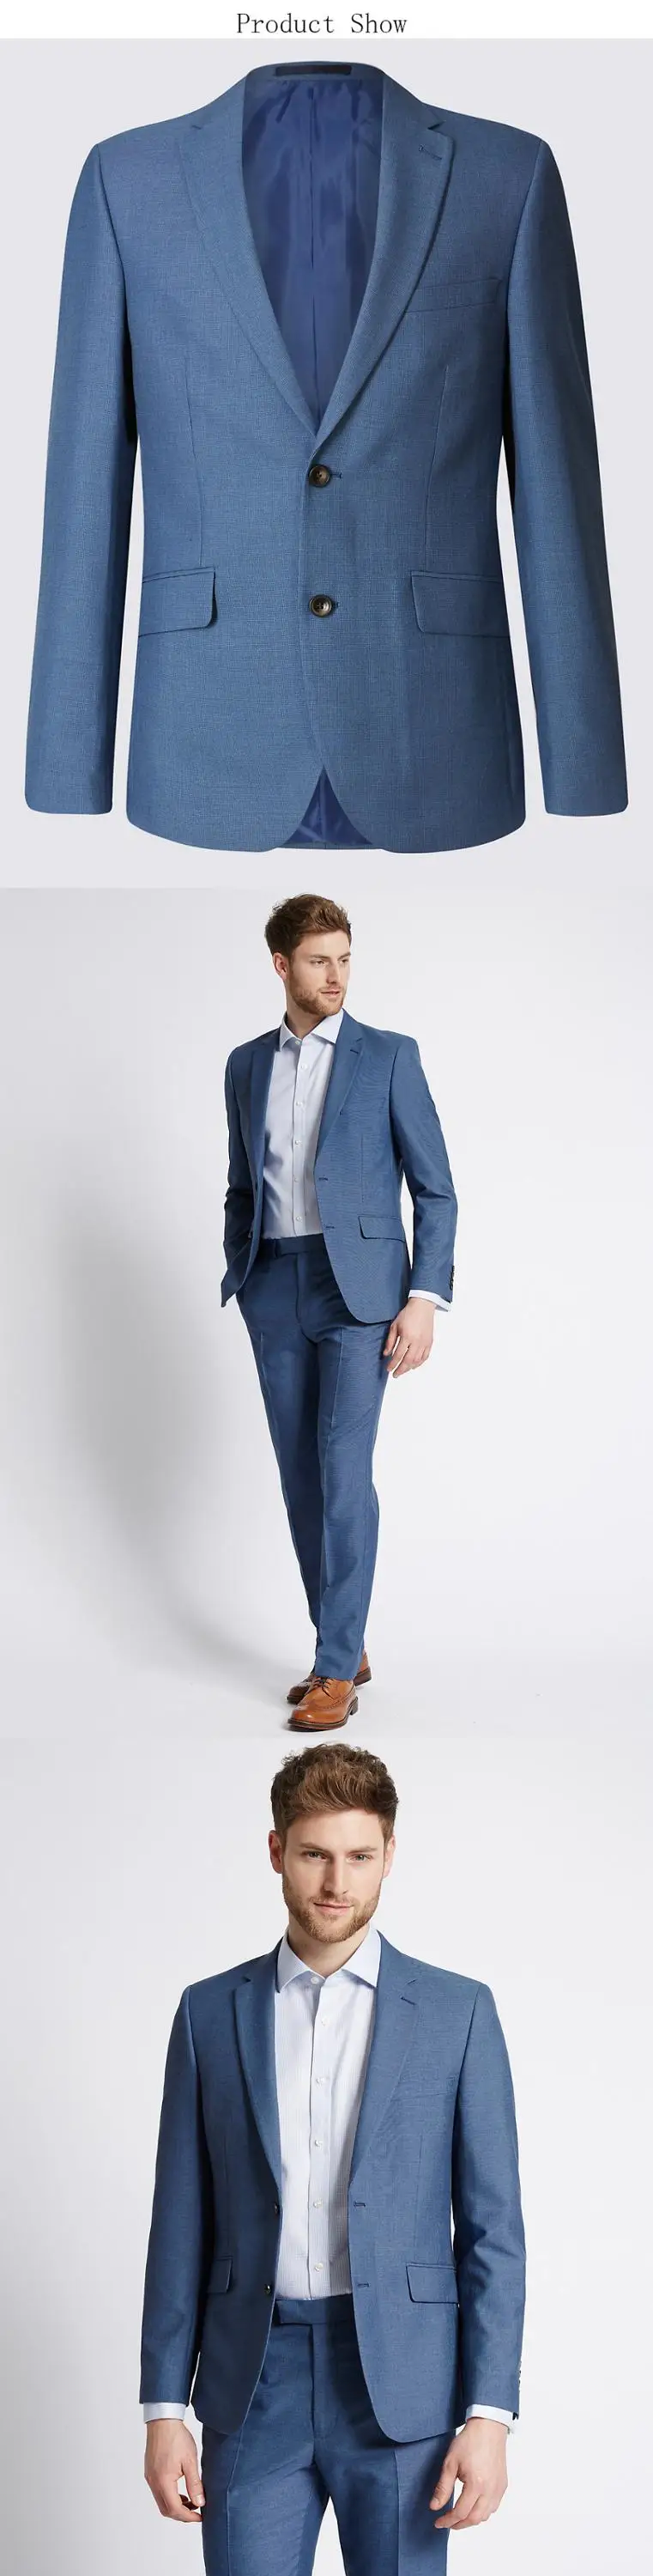 ファッションメンズロイヤルブルーコートパンツサファリスーツ男性用写真 Buy ロイヤルブルーコートパンツ写真 男性スーツ サファリスーツ用男性 Product On Alibaba Com